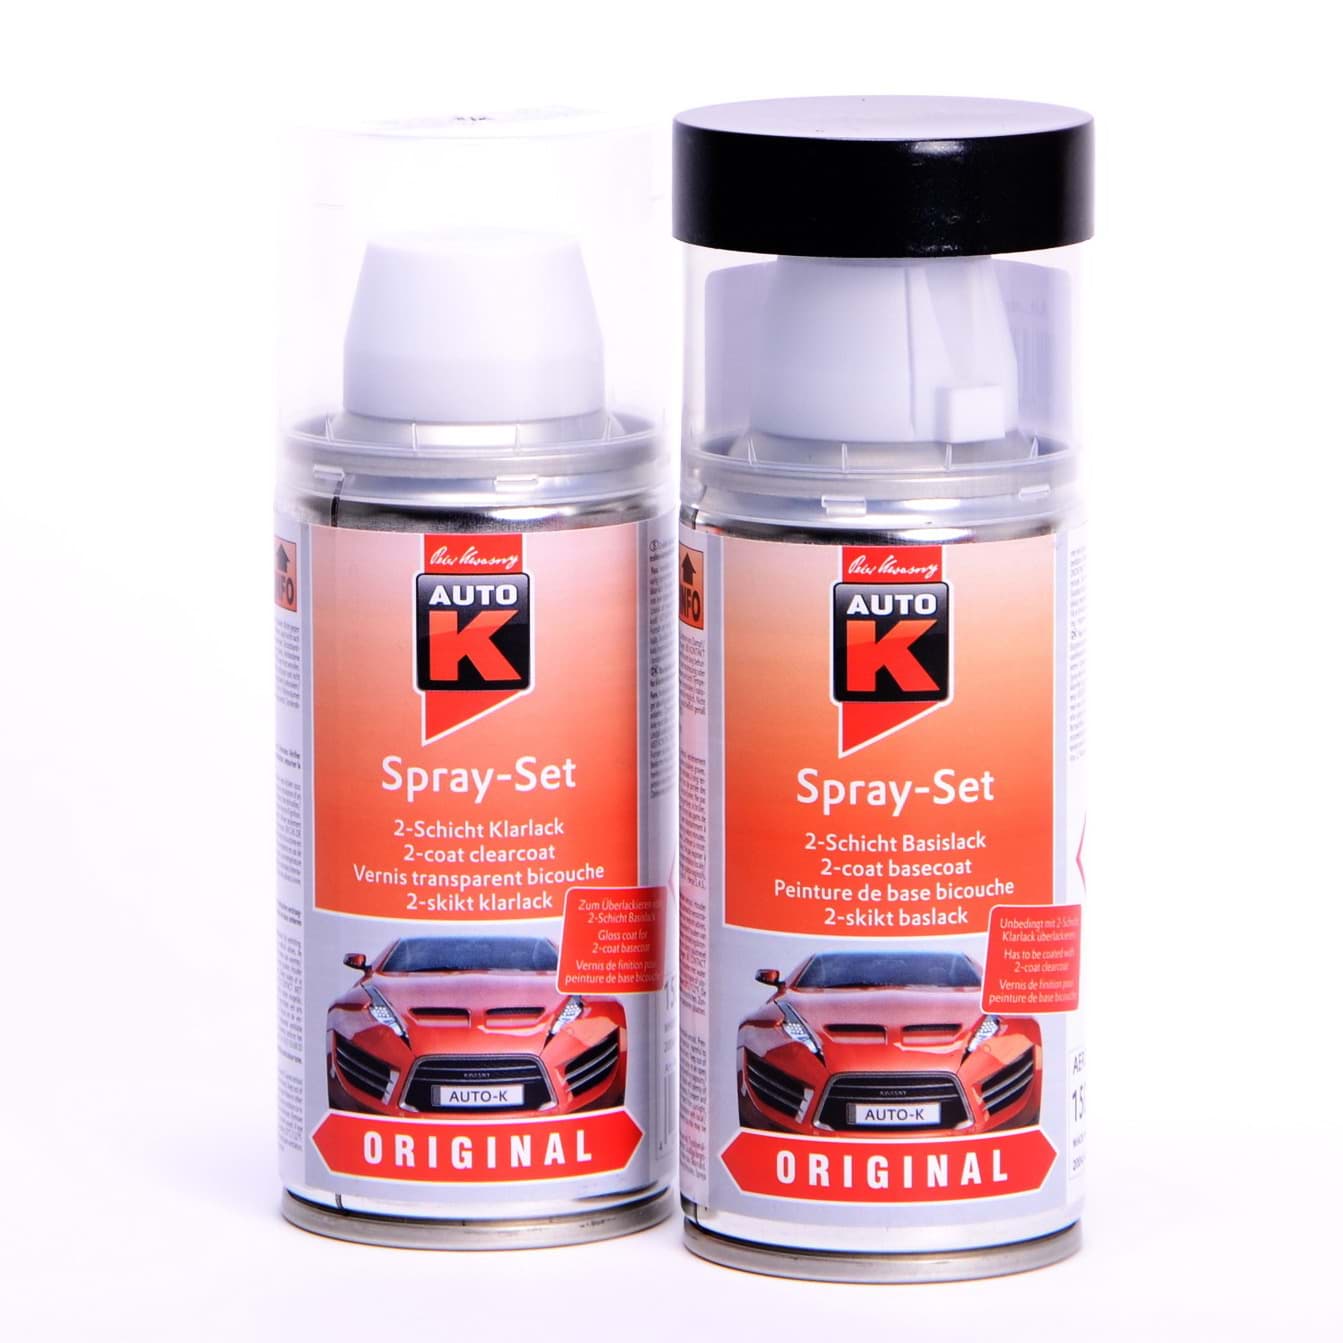 Afbeelding van Auto-K Spray-Set Autolack für Volkswagen, VW, Audi LZ9Y Phantomschwarz perl met 20091